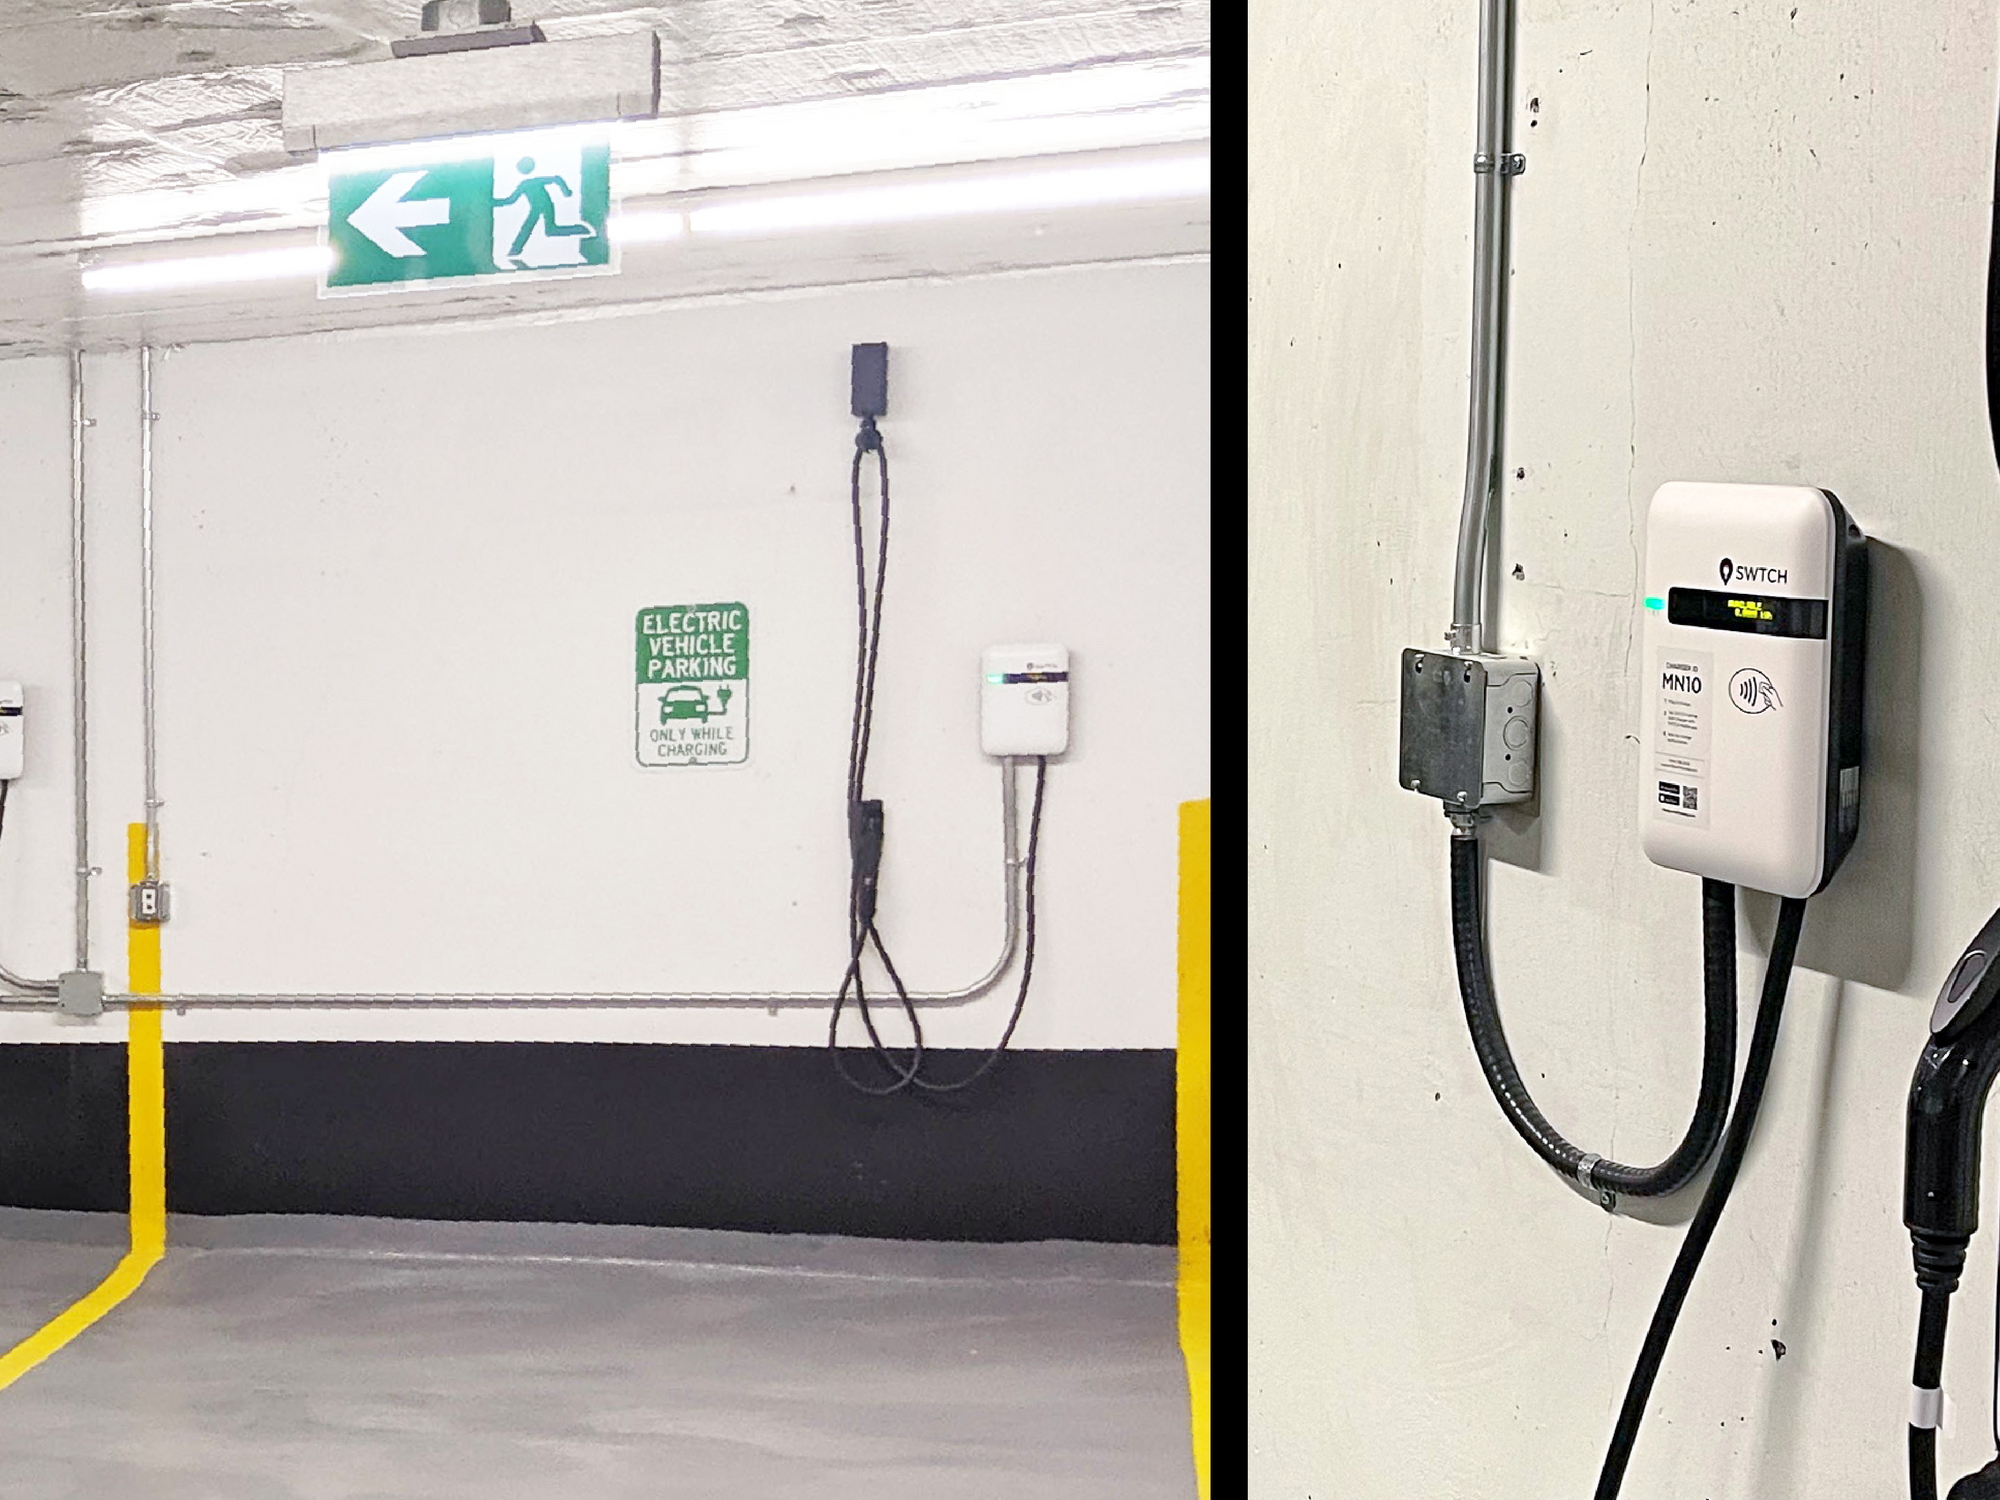 SWTCH Energy Brings EV Charging to Multi-Tenant Buildings in LA